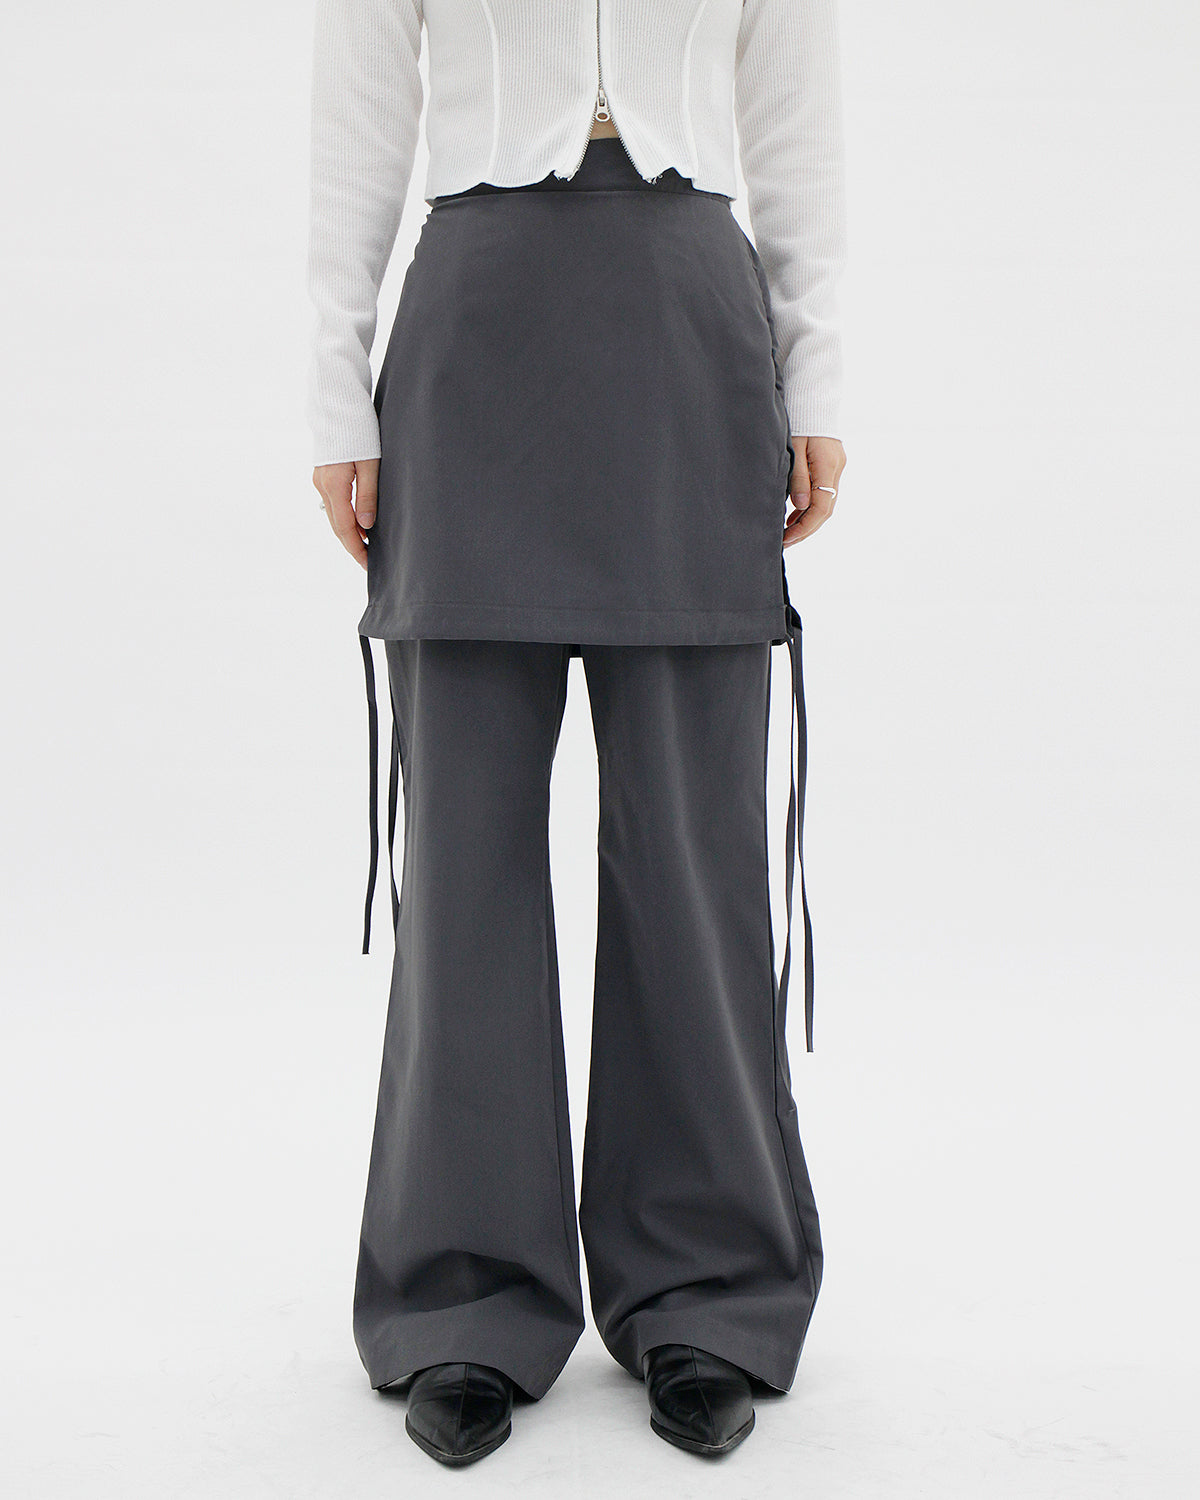 Charcoal Skirt Pants